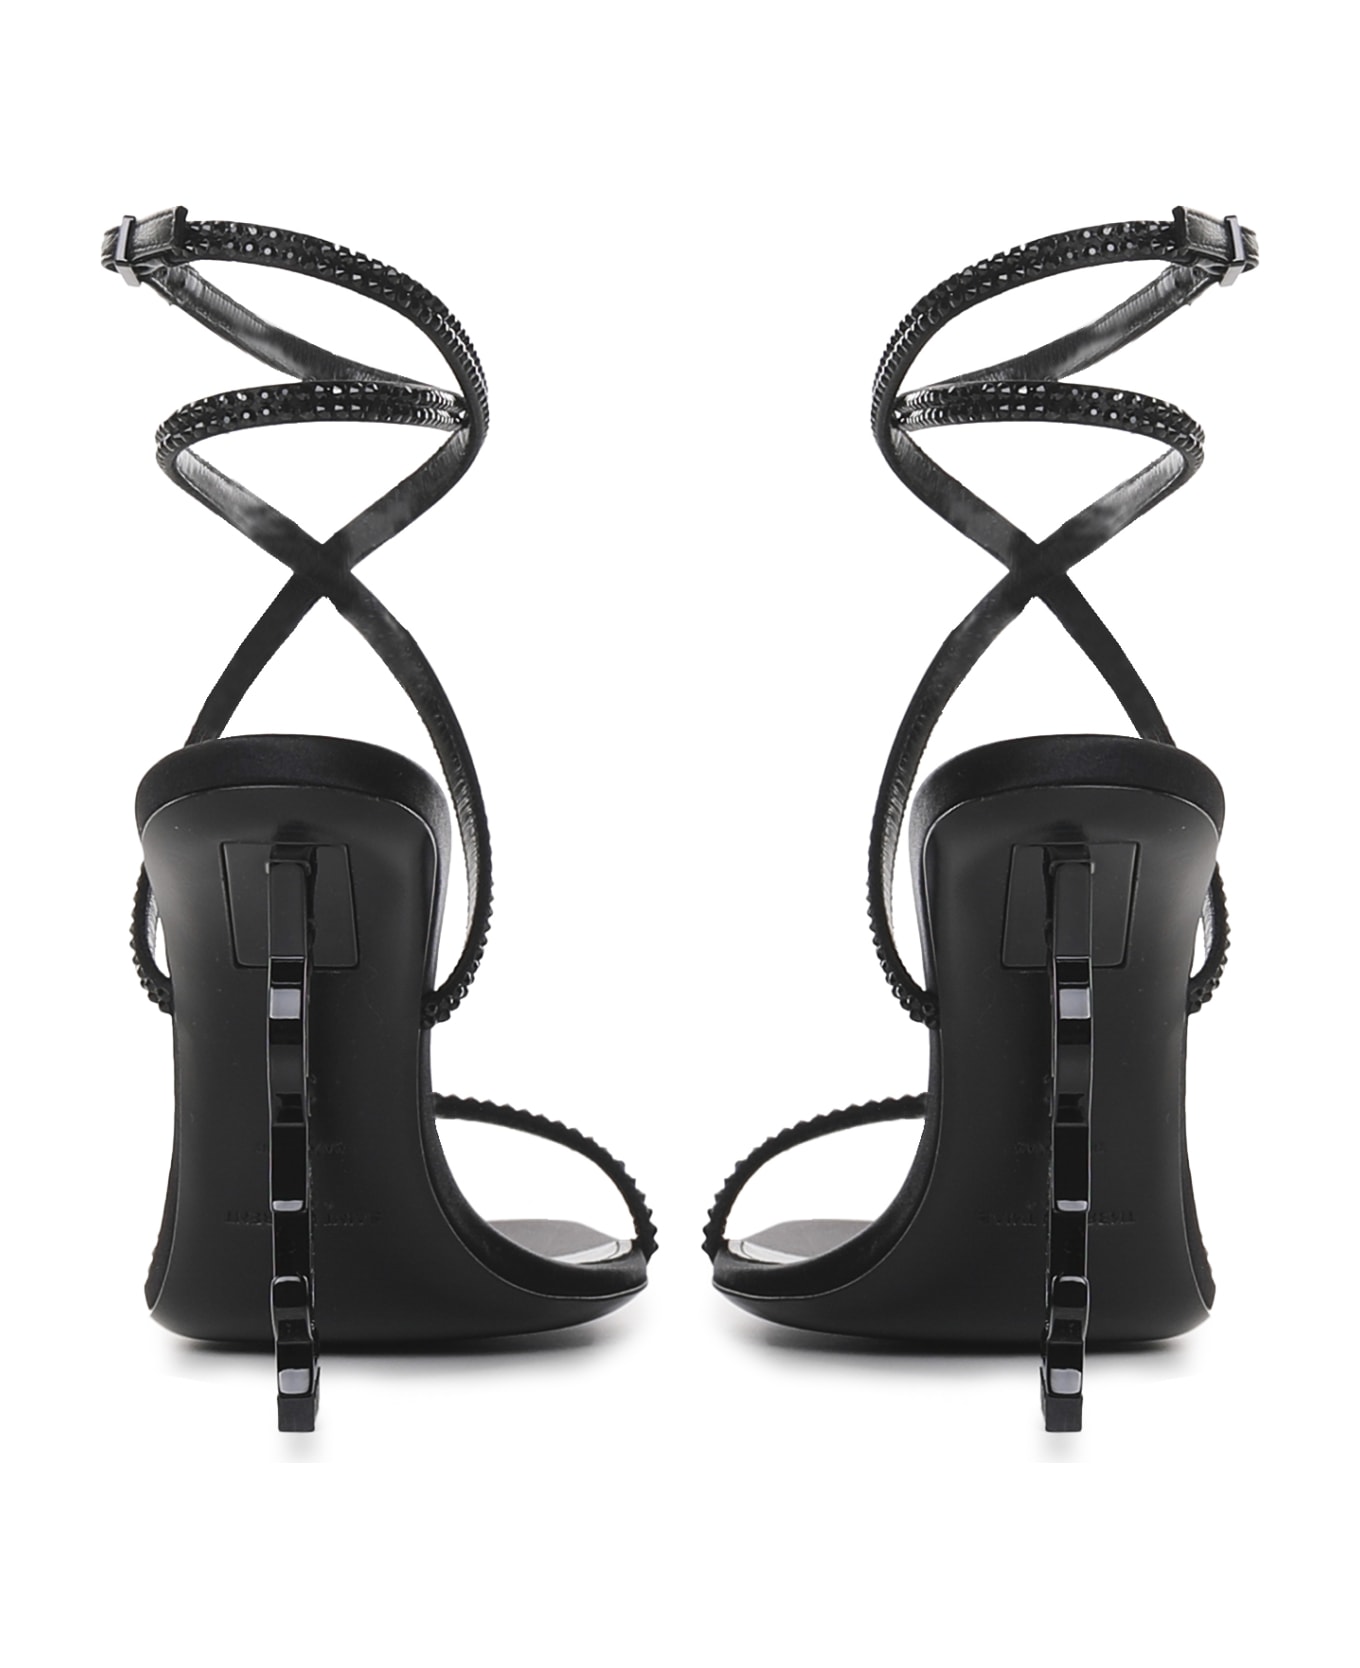 Saint Laurent Opyum Sandals With Black Heel - Black